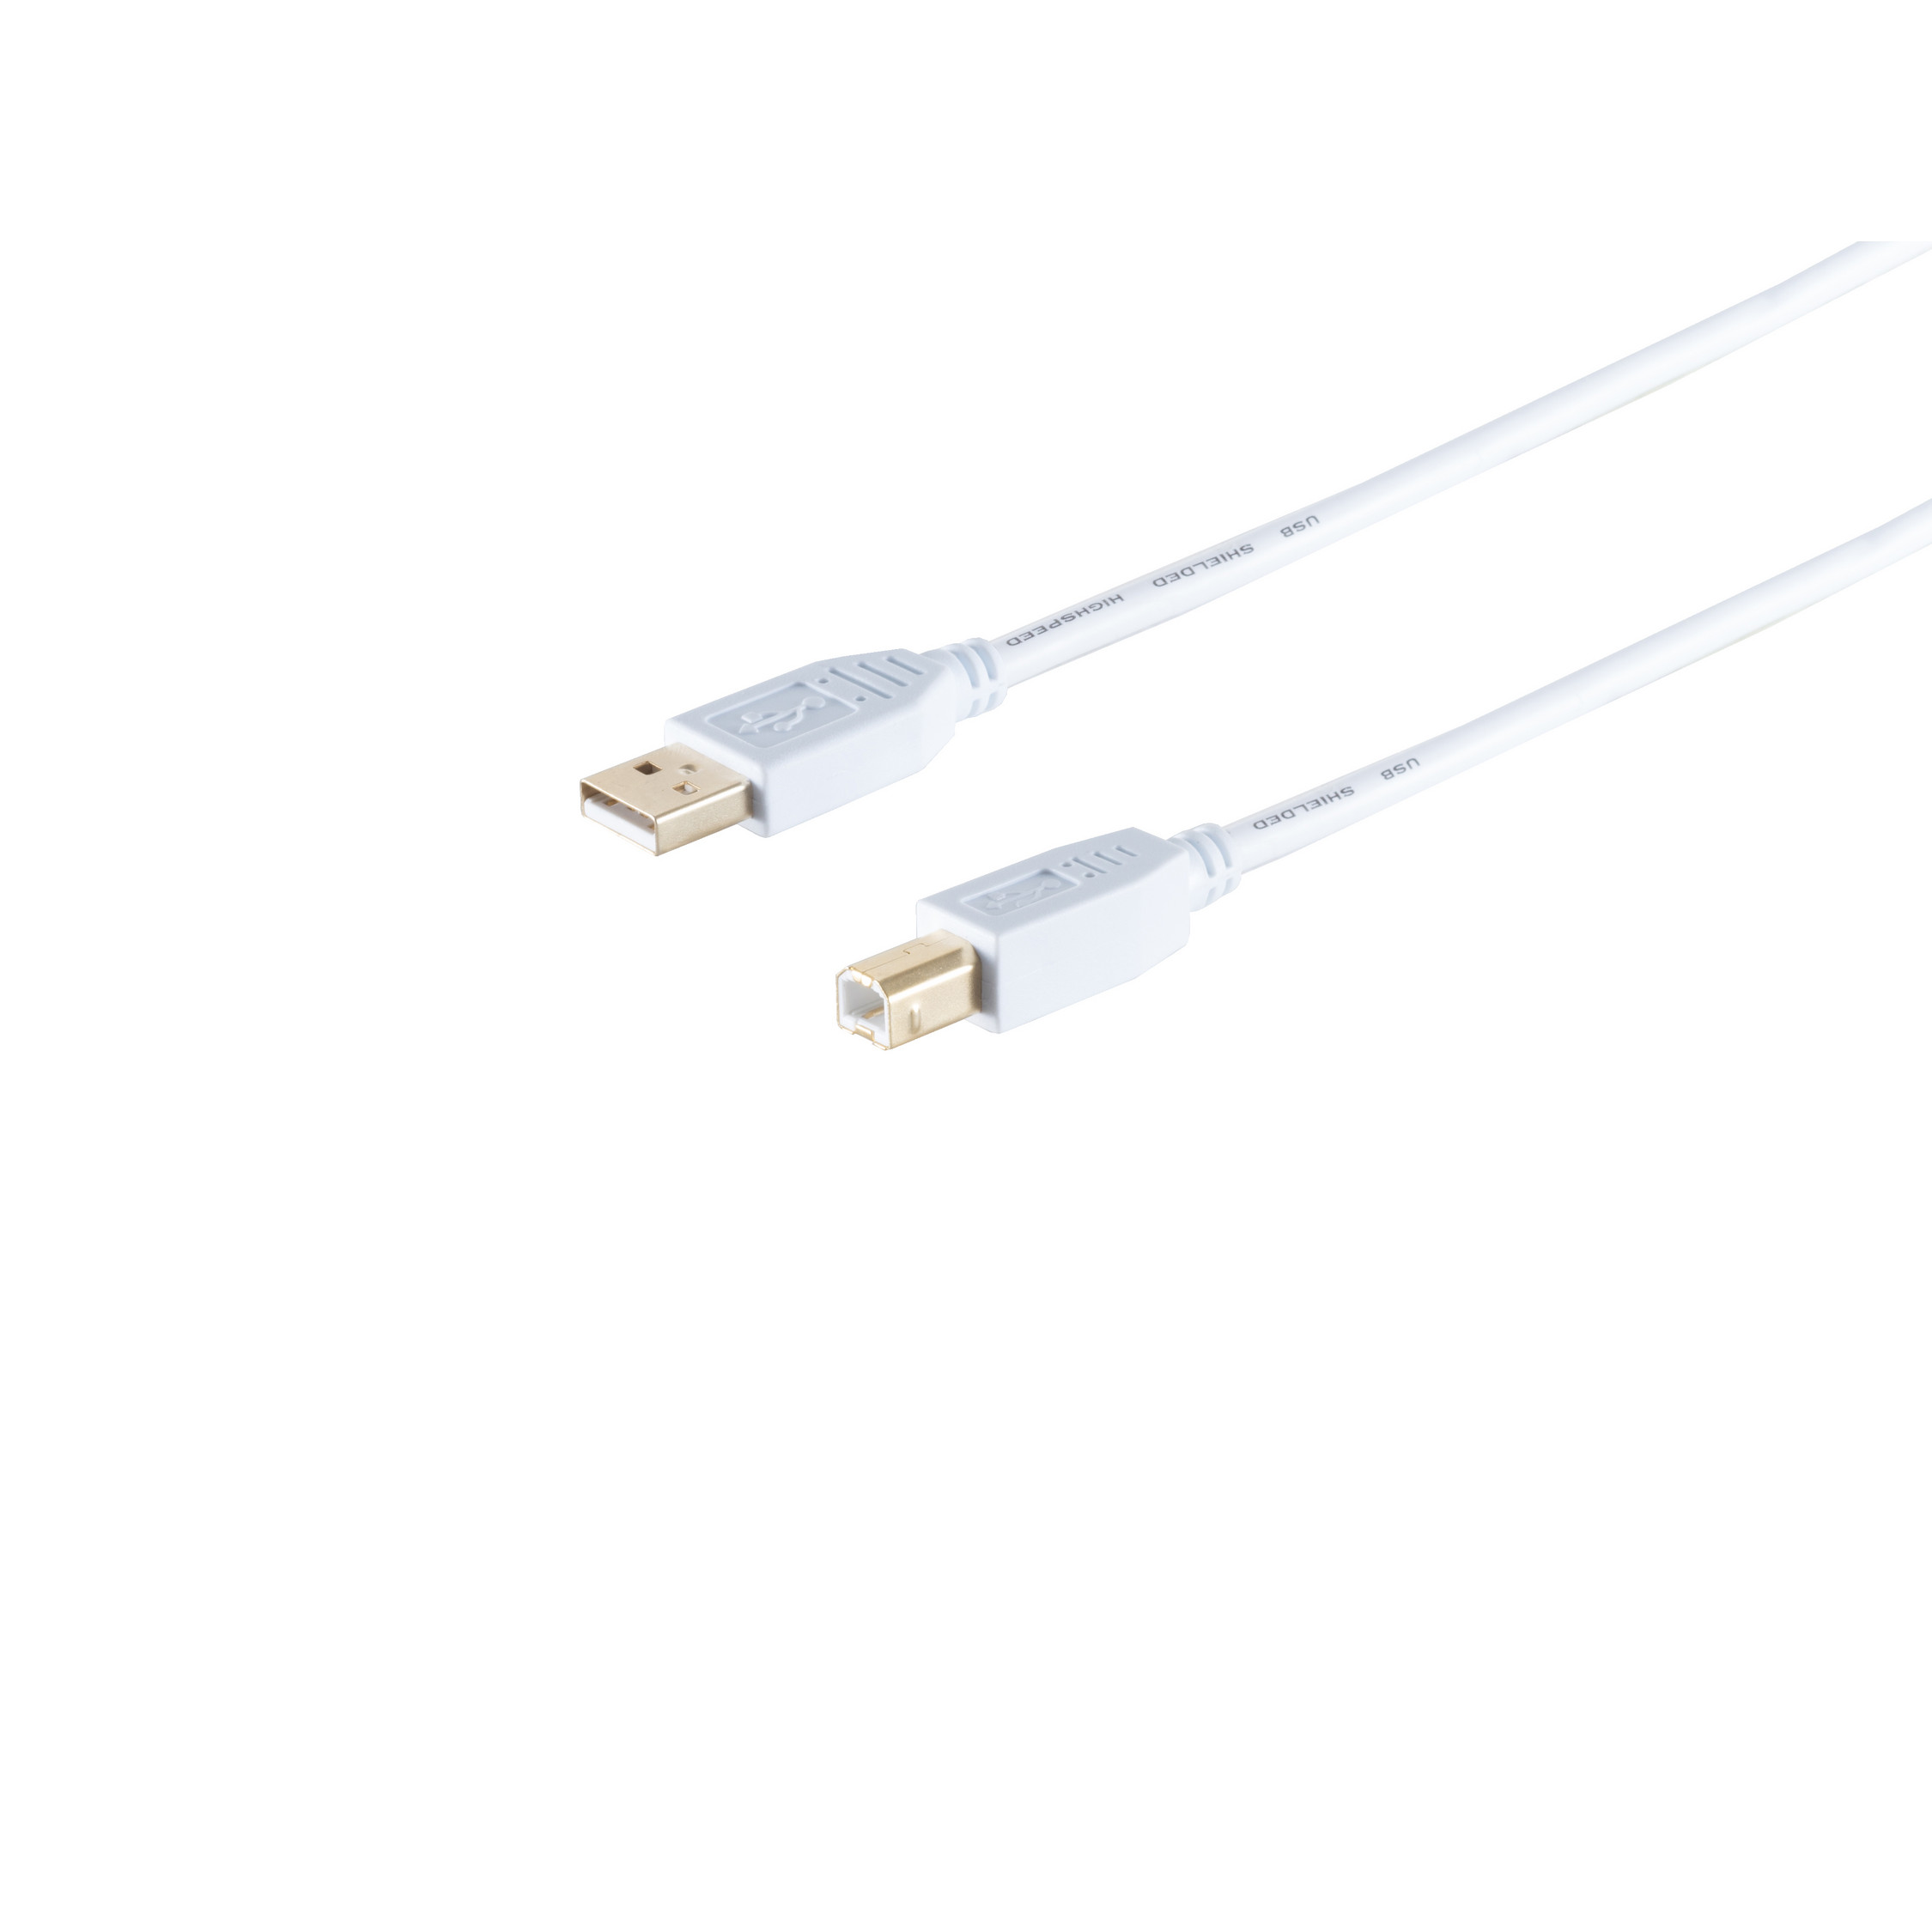 S/CONN MAXIMUM Speed Kabel 2.0, 1,0m Stecker, Kabel, A/B USB High USB USB 2.0 CONNECTIVITY weiß